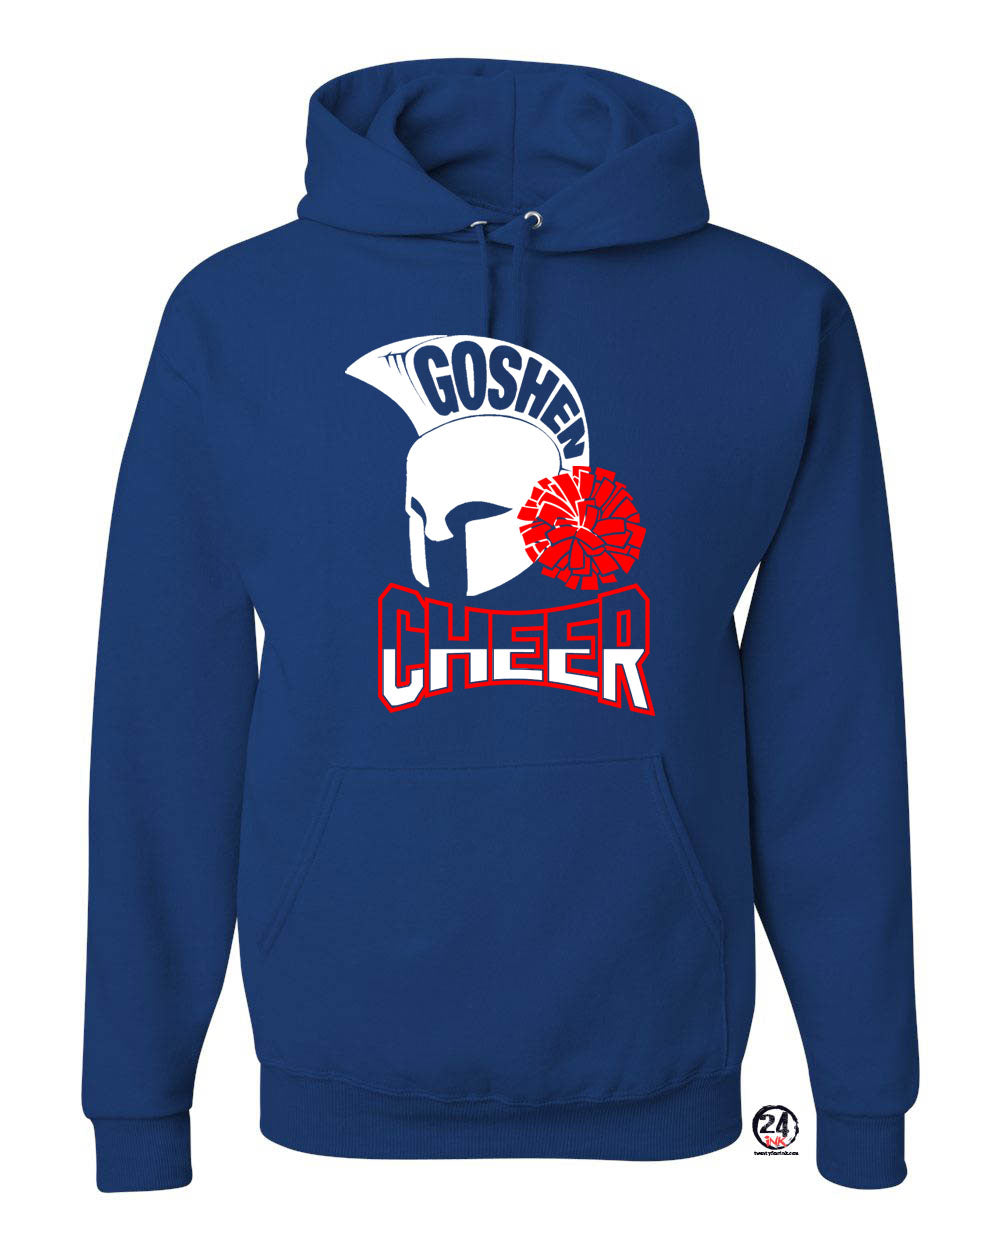 Goshen Cheer Design 8 Hooded Sweatshirt